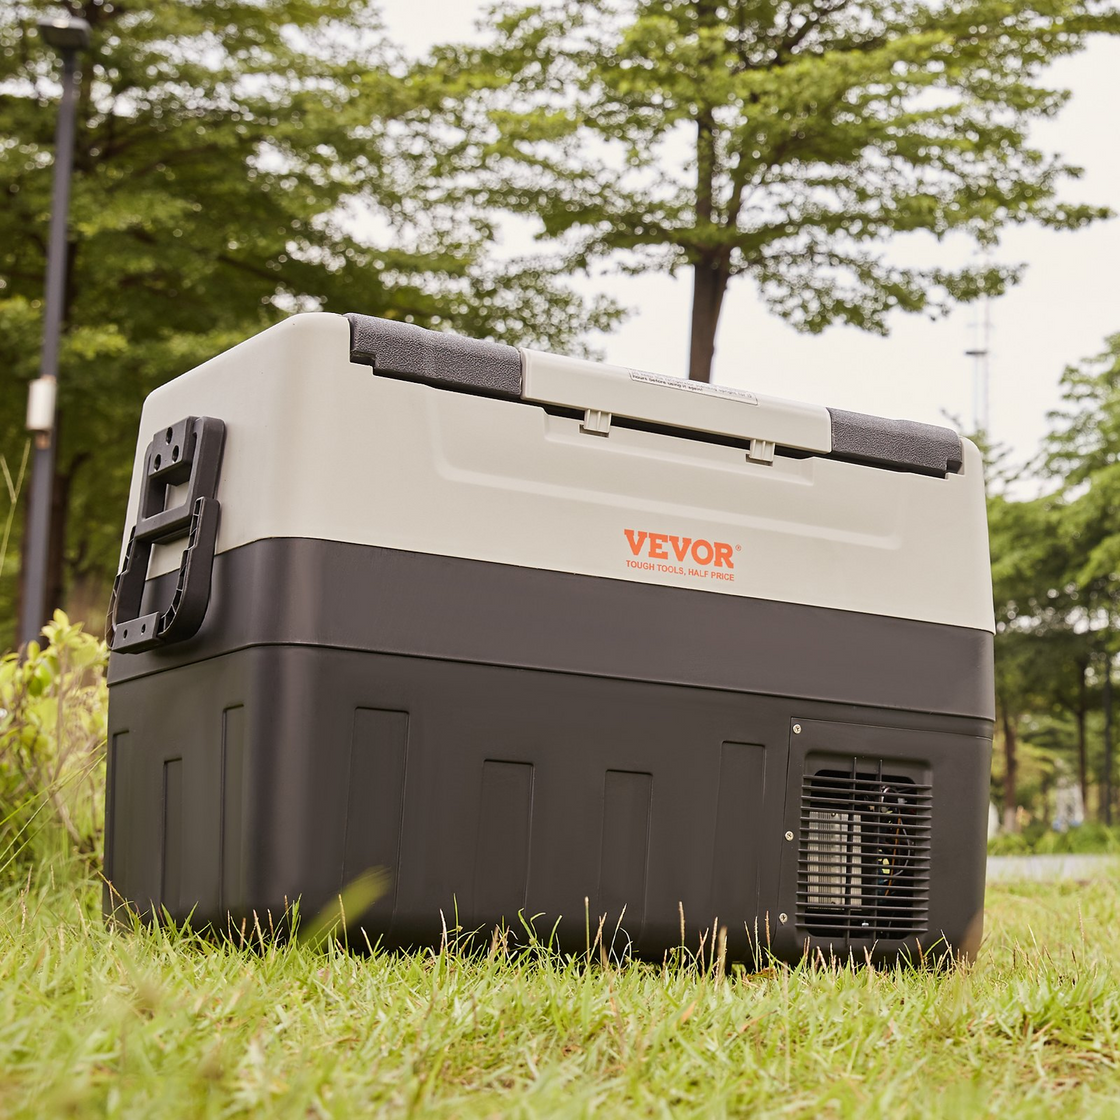 VEVOR Car Refrigerator Fridge - Dual Zone Portable Freezer for Outdoor, Camping, Travel, RV